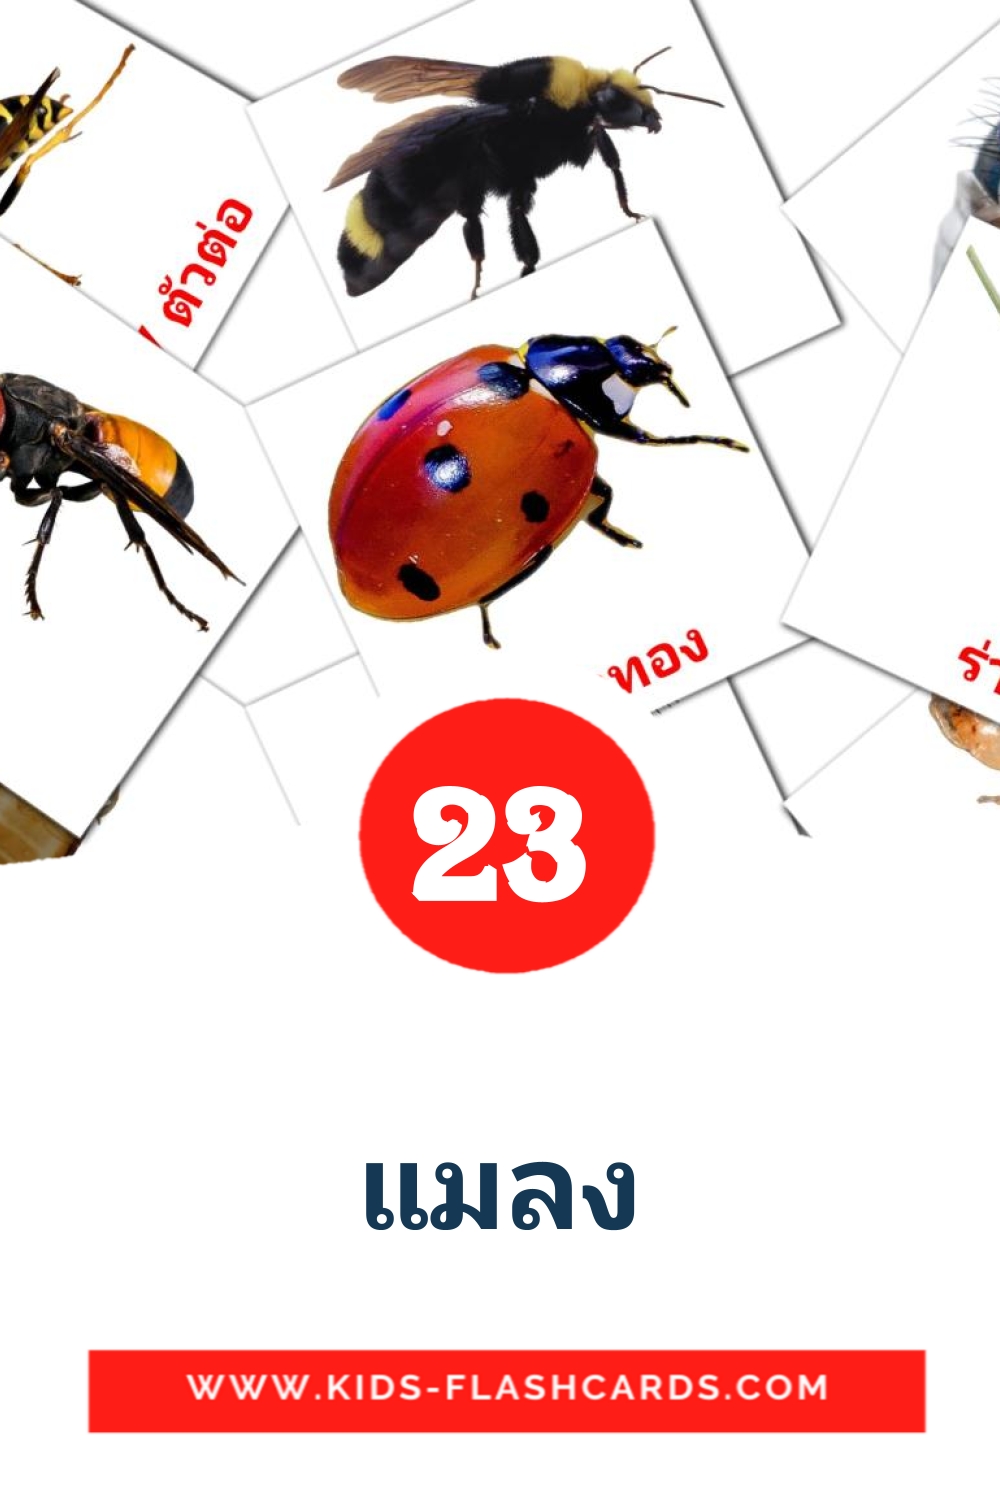 23 แมลง Picture Cards for Kindergarden in thai